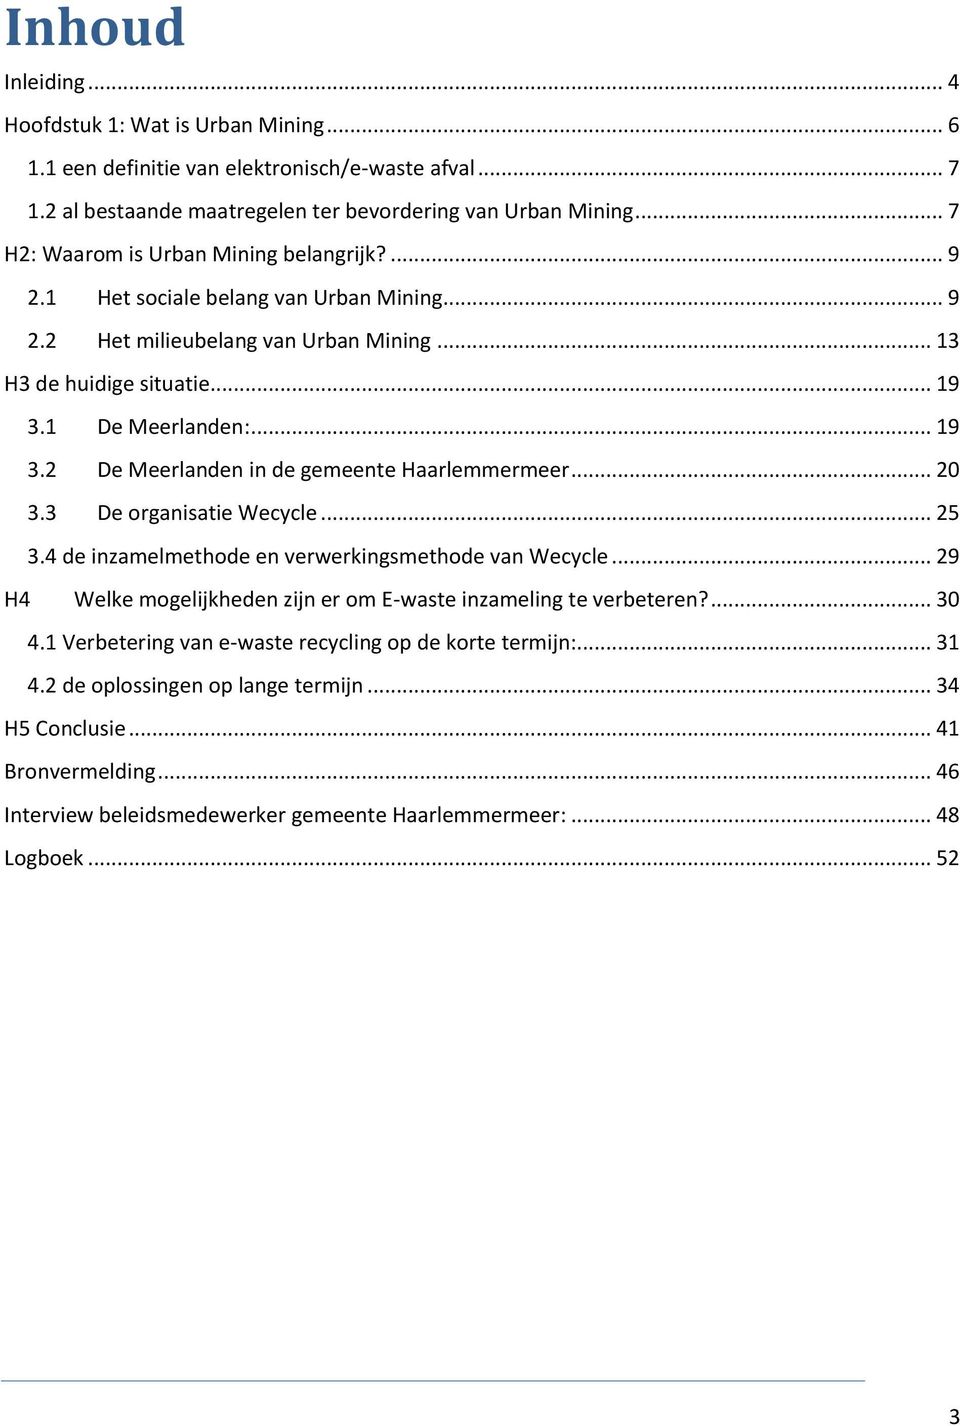 1 De Meerlanden:... 19 3.2 De Meerlanden in de gemeente Haarlemmermeer... 20 3.3 De organisatie Wecycle... 25 3.4 de inzamelmethode en verwerkingsmethode van Wecycle.